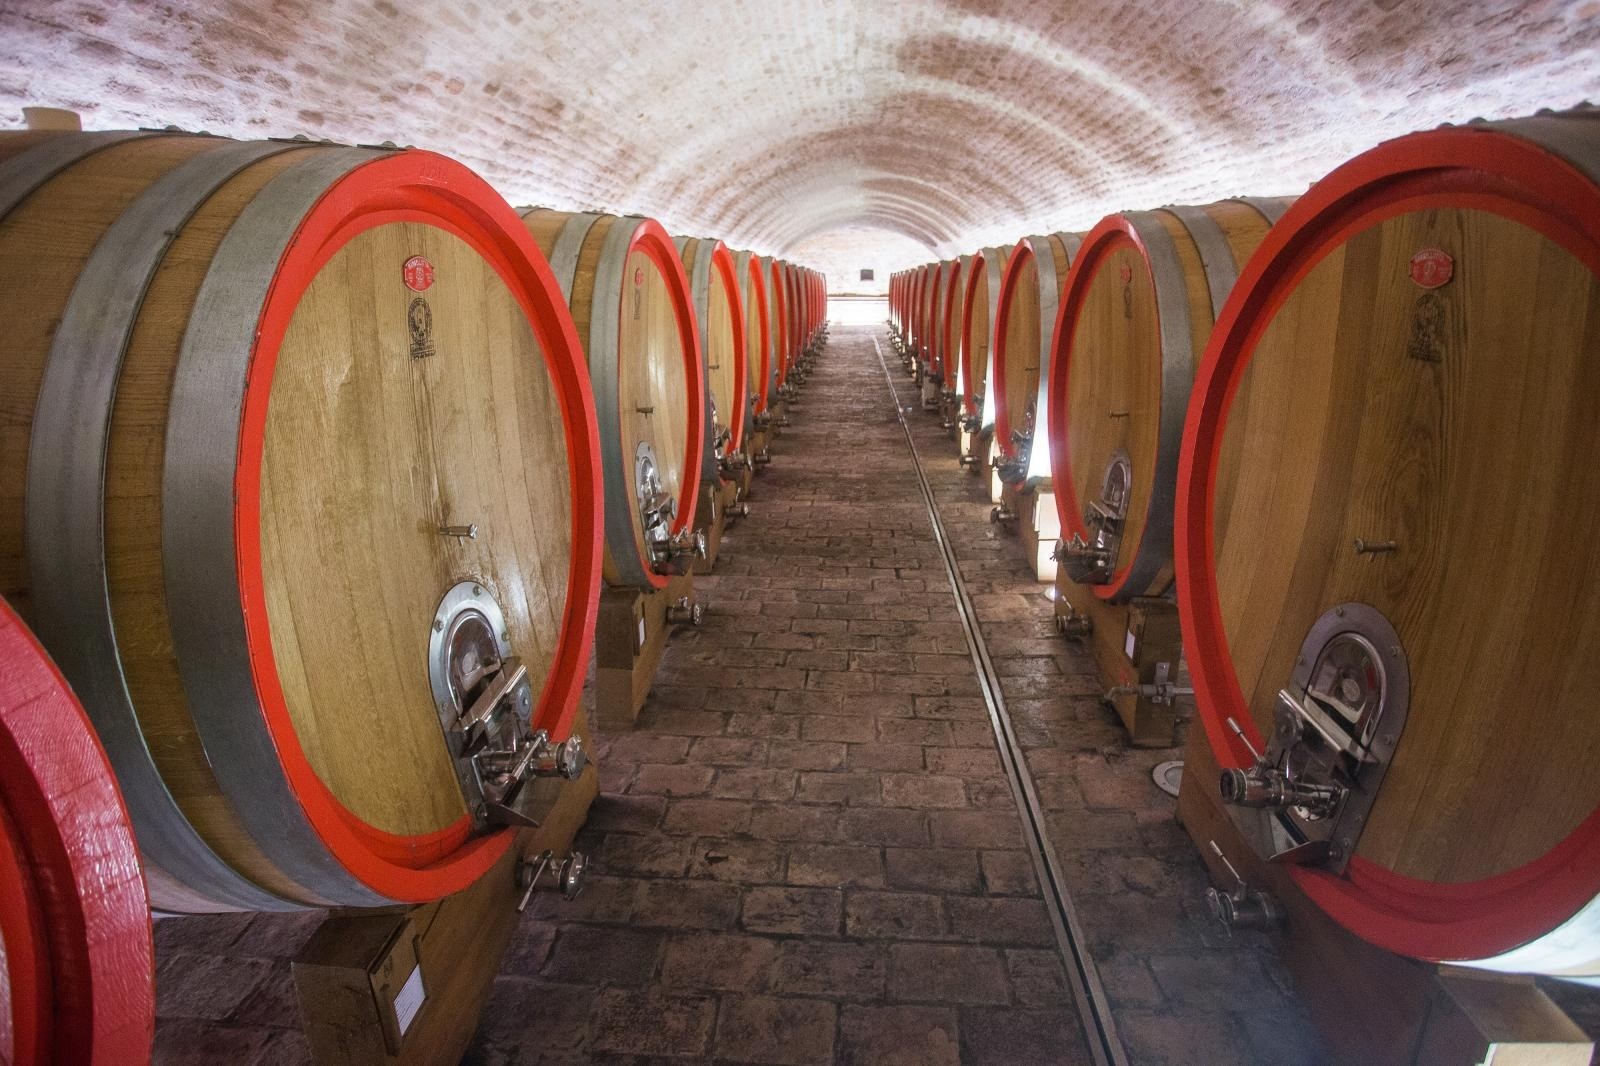 Vinarija Belje i njen suvremeni pogon u Kneževim Vinogradima  22.01.2019., Knezevi vinogradi - Vinarija Belje je jedna od najsuvremenijih vinarija u regiji smjestena je u centru vinograda cime je omogucen brzi transport grozdja tijekom berbe sa svih vinogradarskih lokacija. S ukupnim kapacitetom 8 milijuna litara vina smjestenih u gotovo 250 inox spremnika. Stara zgrada i stari podrum vinarije Belje gdje se vino cuva u drvenim bacvama. Photo: Davor Javorovic/PIXSELL